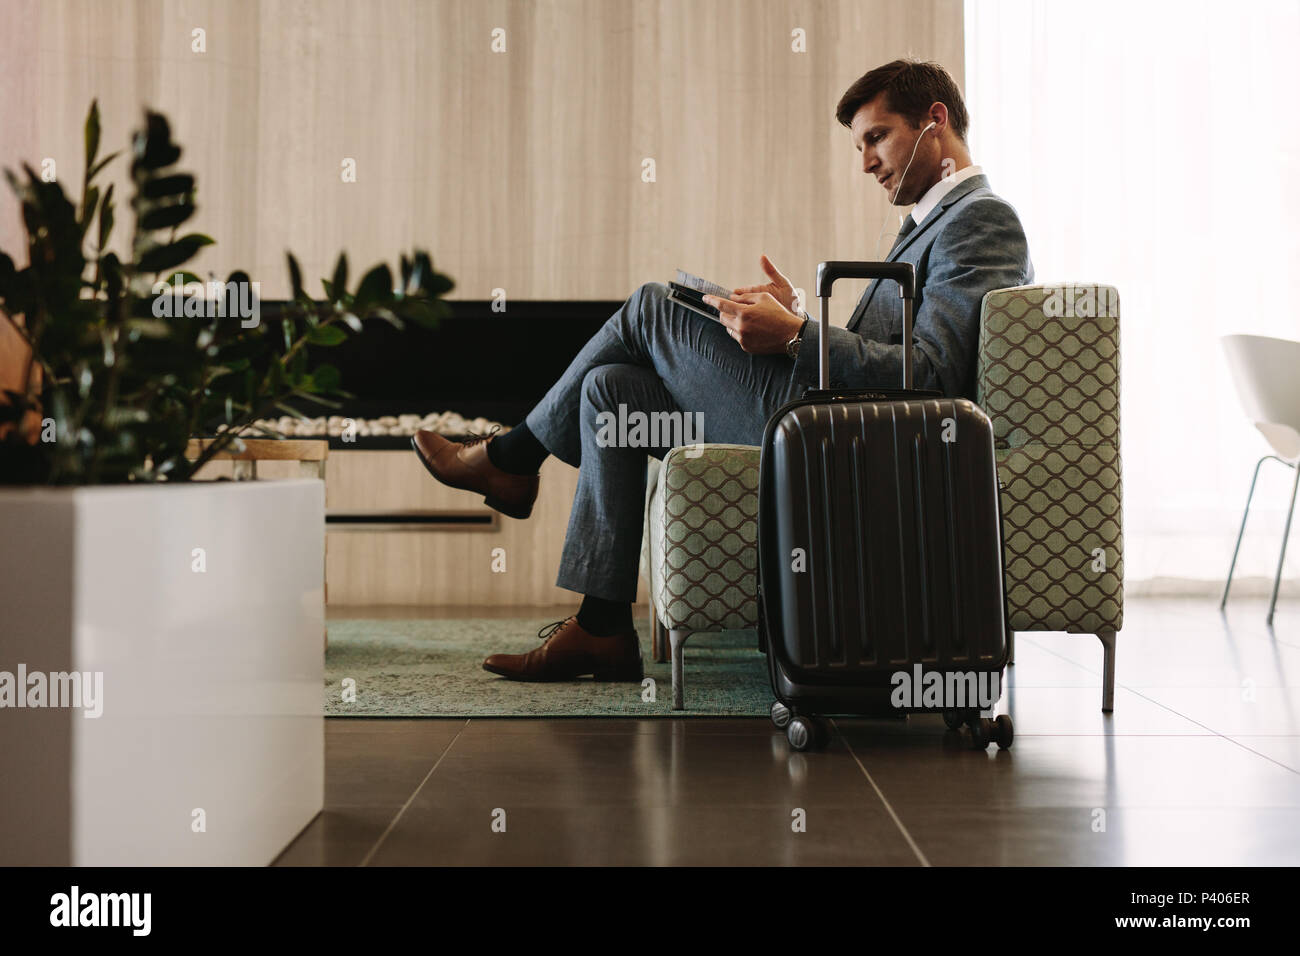 Empresario leyendo una revista mientras espera su vuelo en la terminal aérea lounge. Empresario en el área de espera del aeropuerto leyendo una revista. Foto de stock